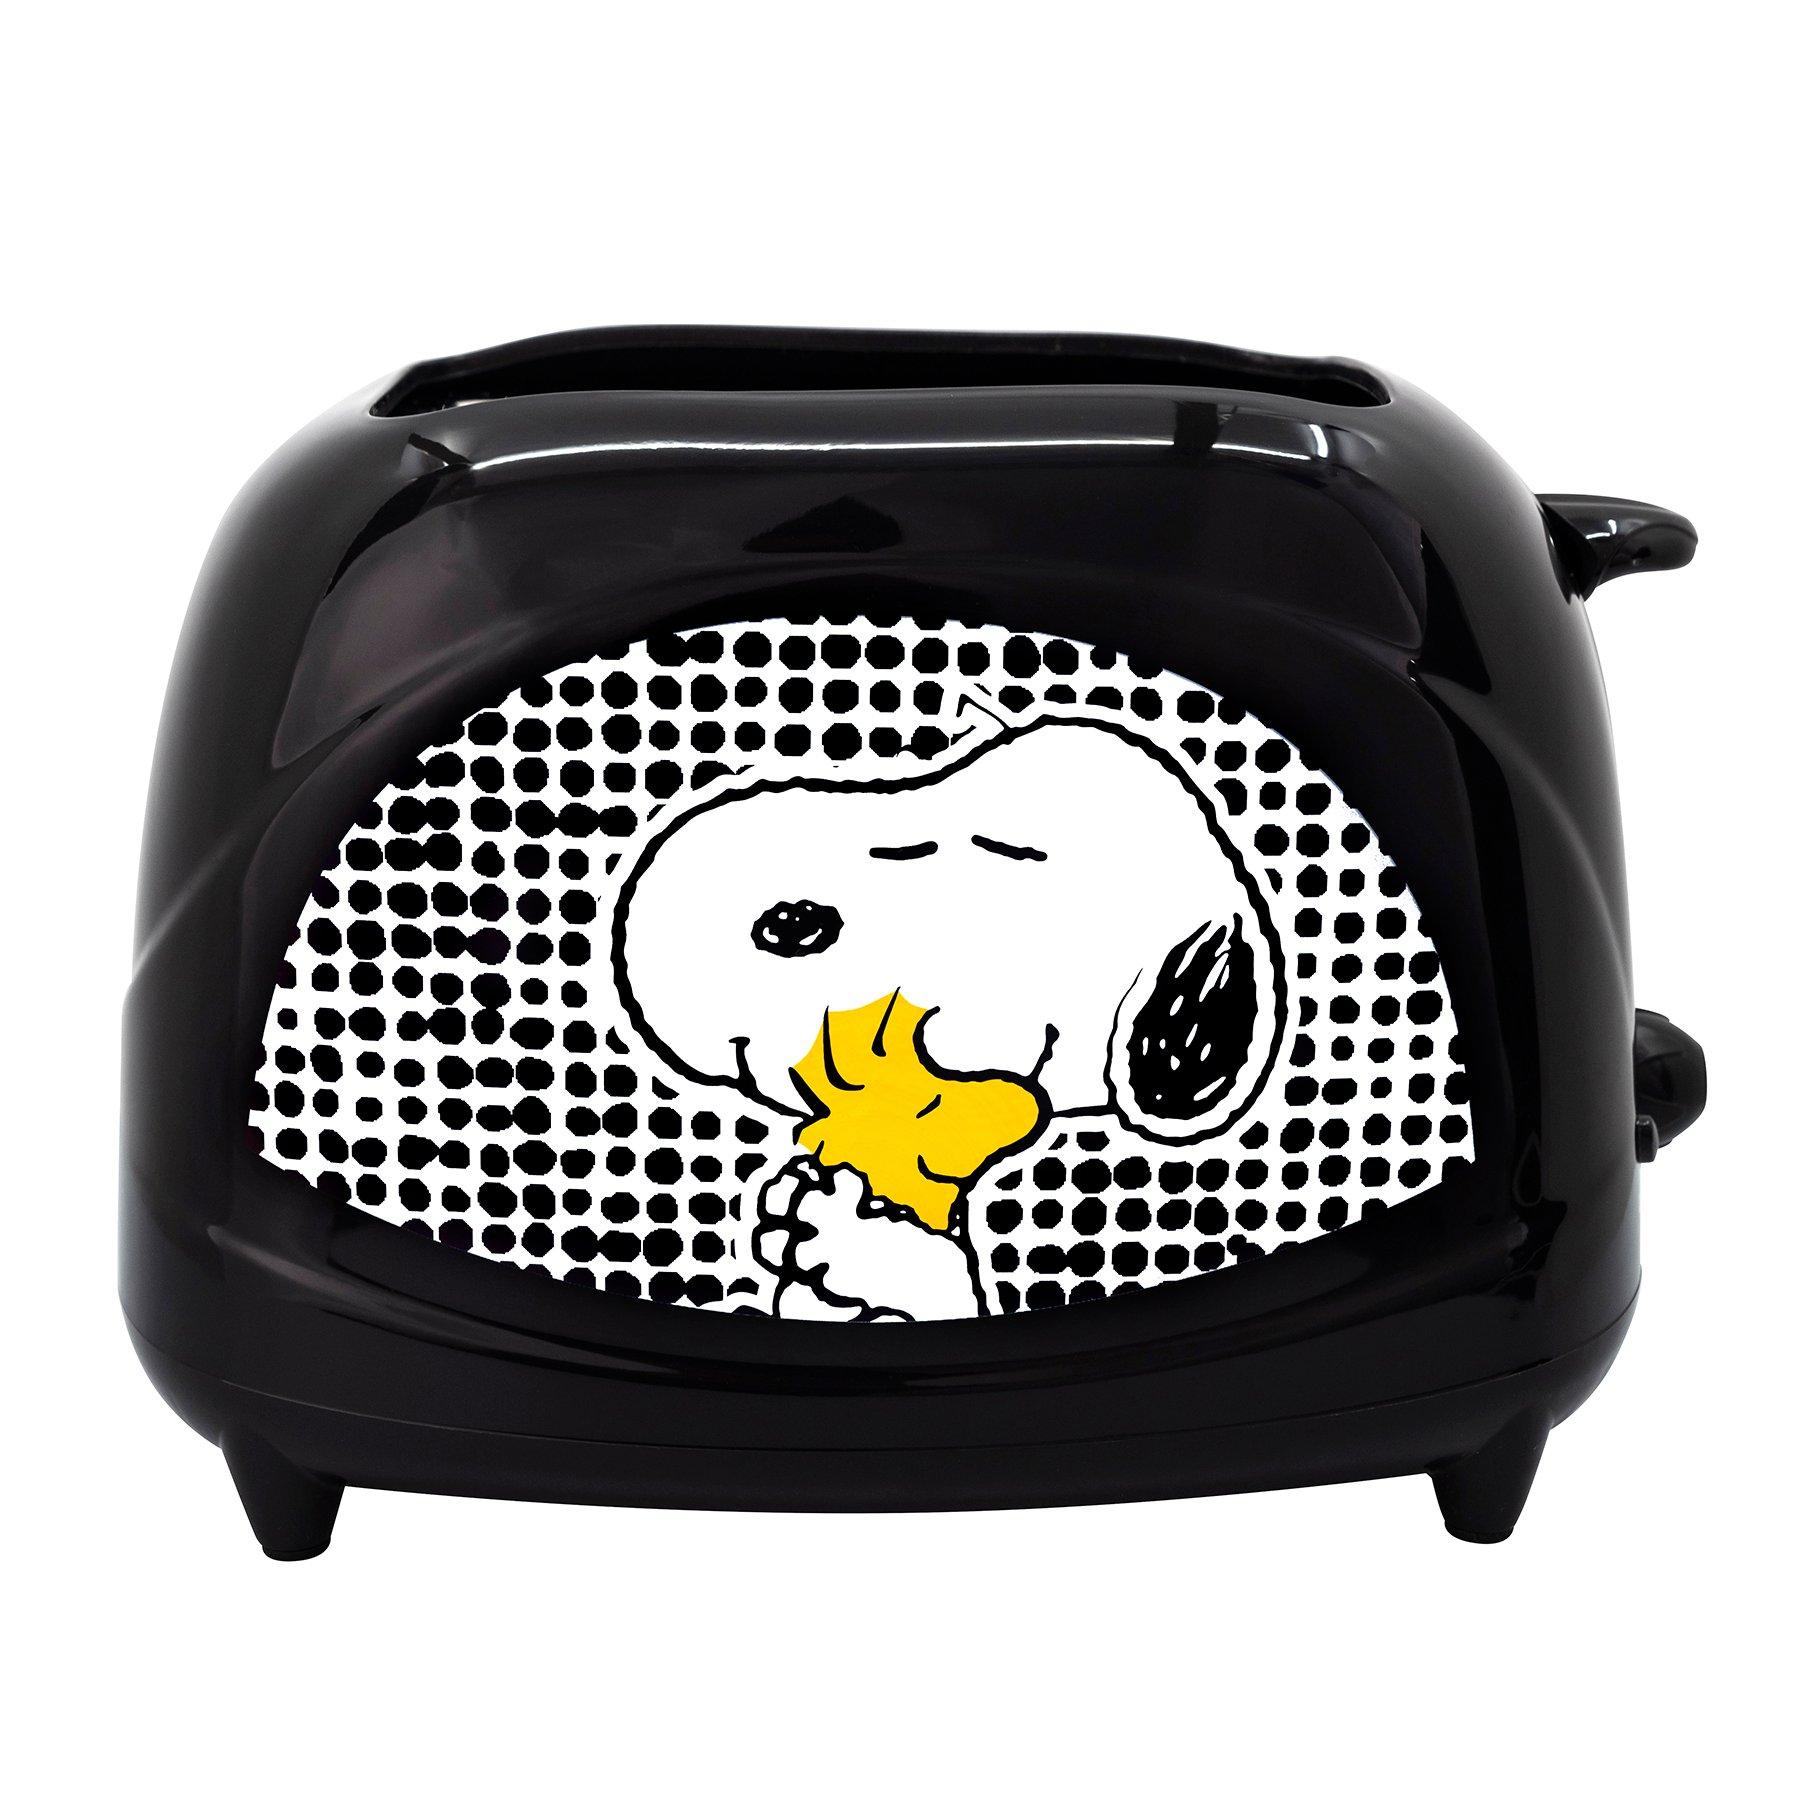 Peanuts Snoopy Cozy Toaster HDTS-F02PA2NV 750W / 220V